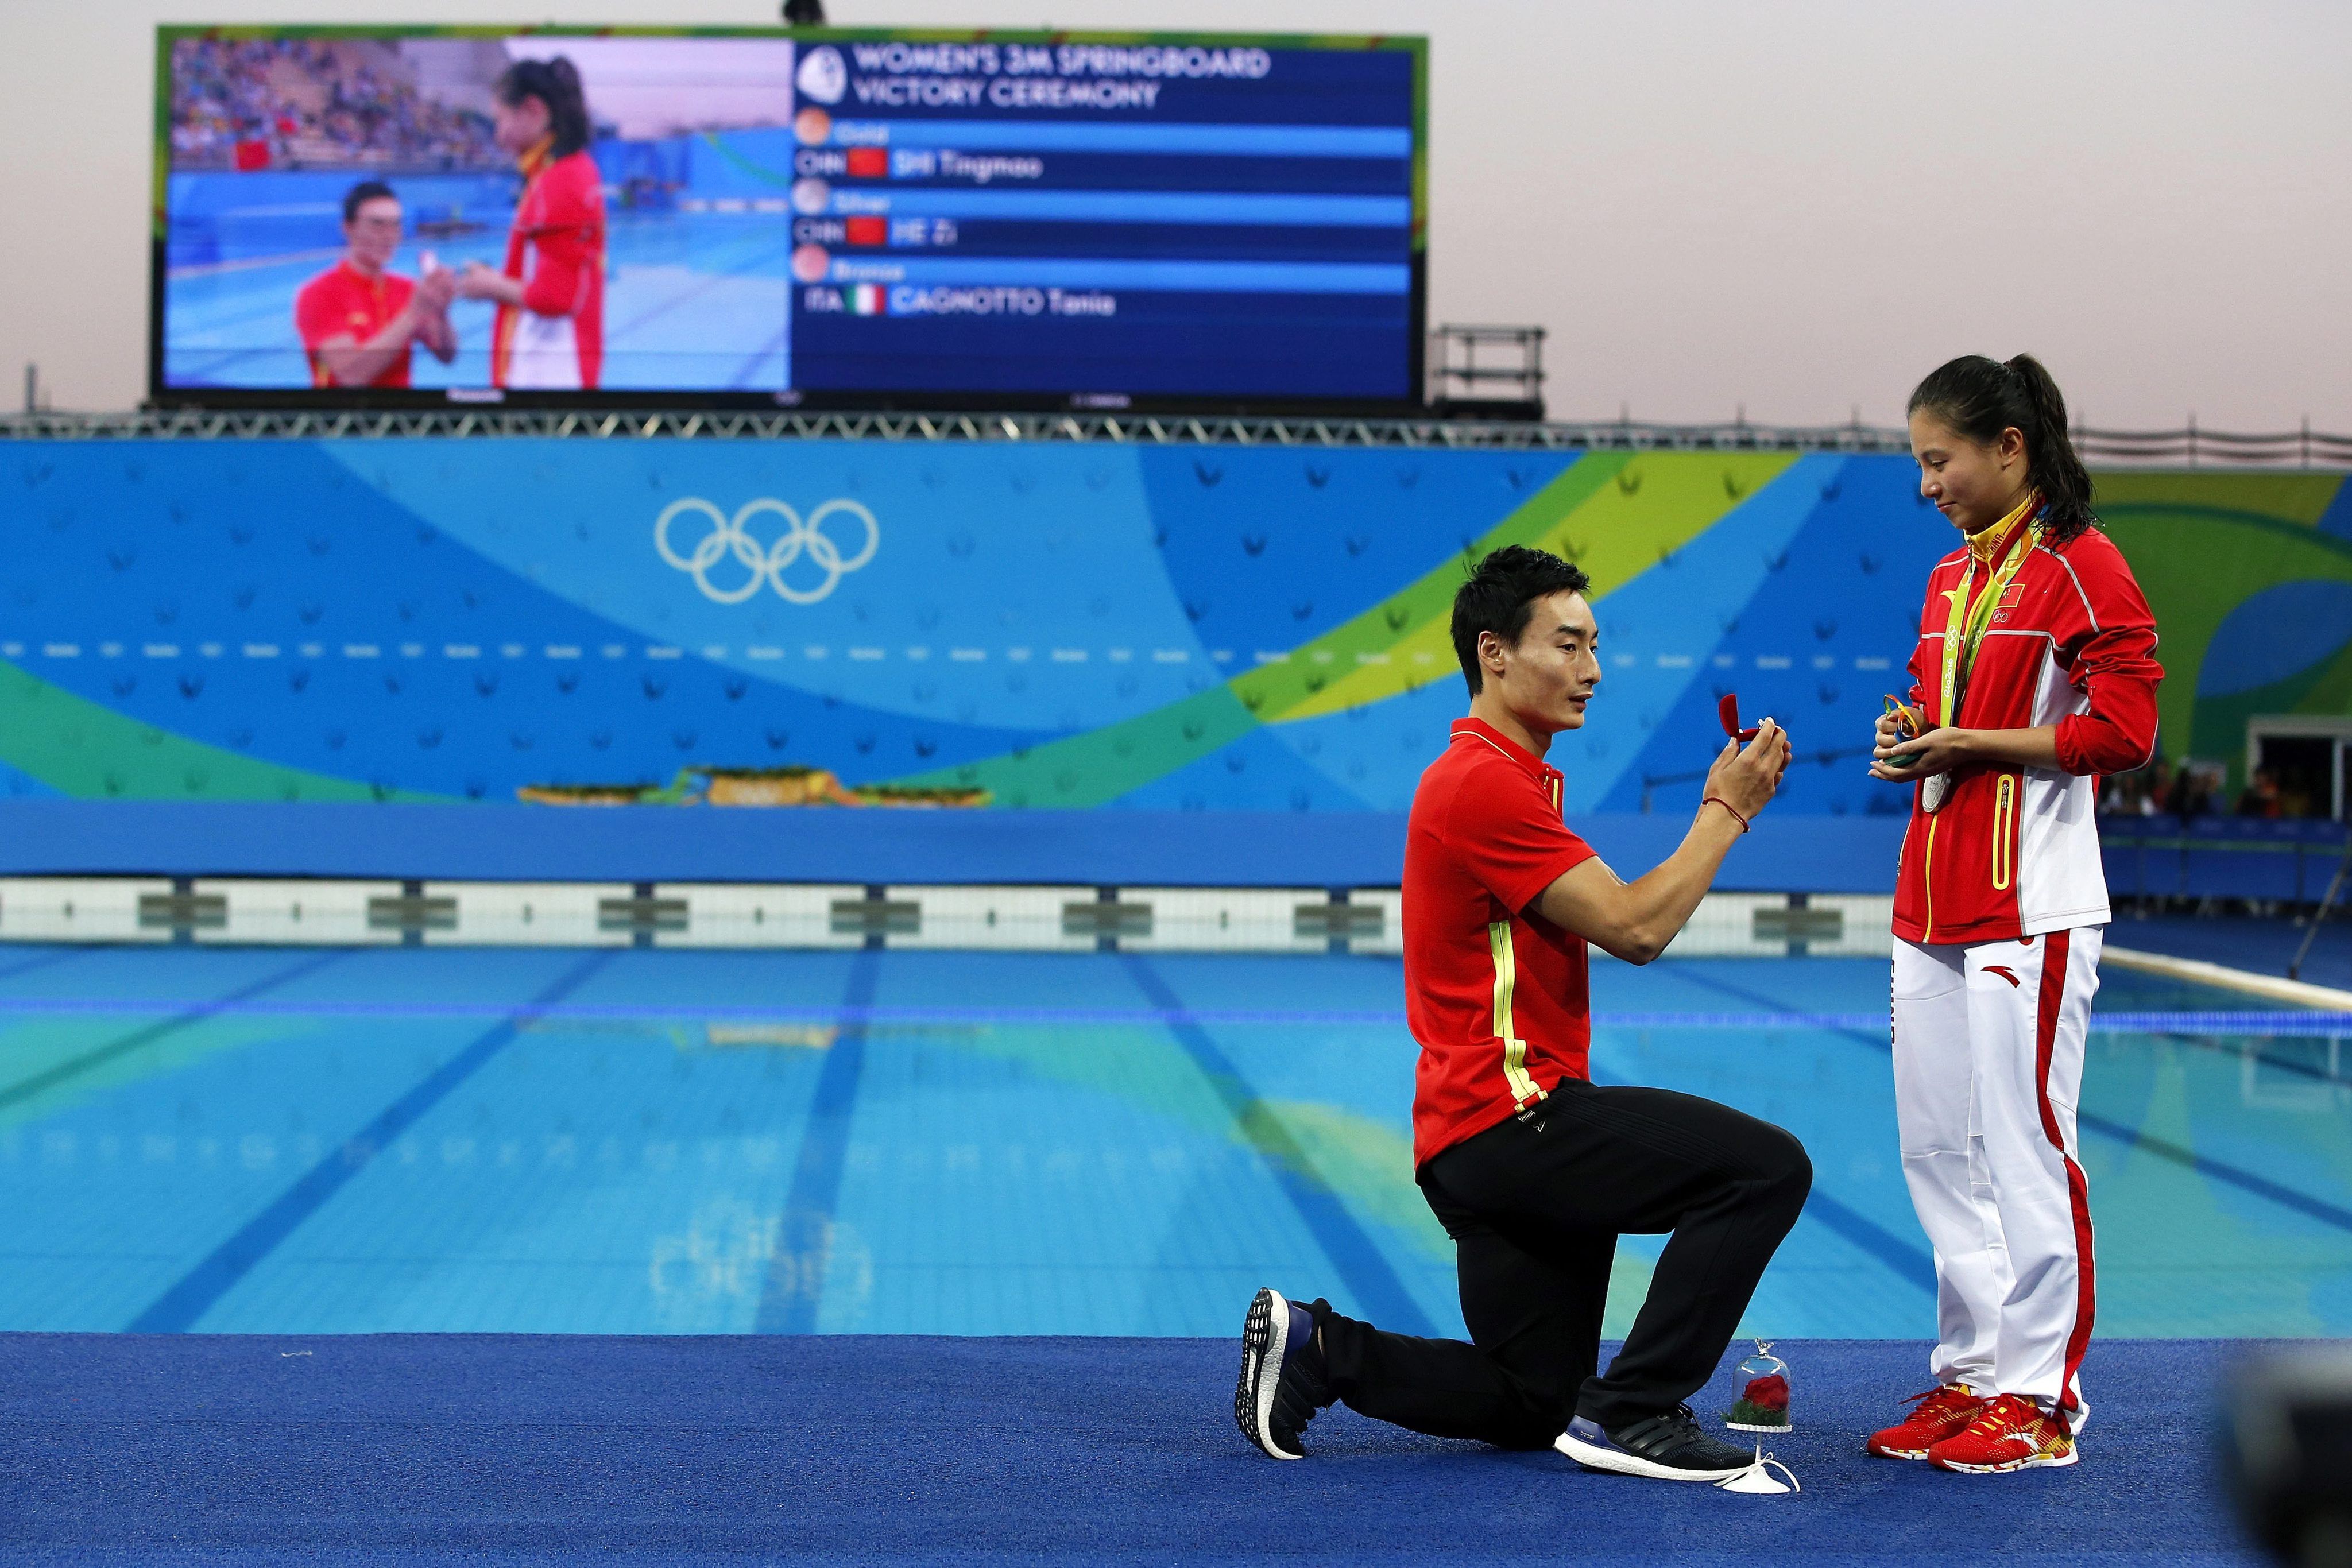 La propuesta de matrimonio en el podio de los Juegos Olímpicos de Río 2016